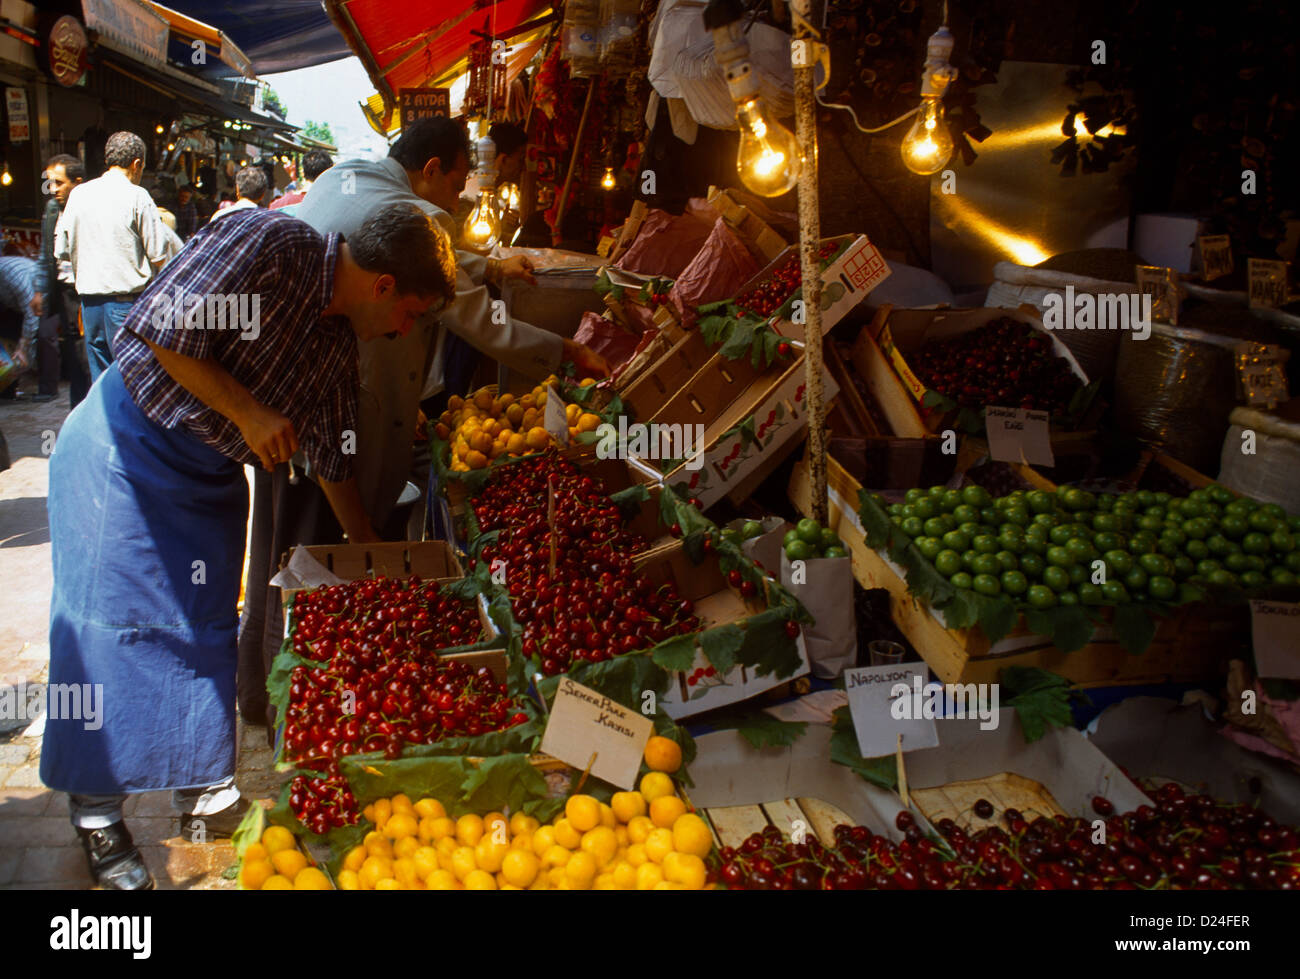 Istanbul Türkei Spice Bazaar - Misir Carsisi - Frucht Stall Stockfoto